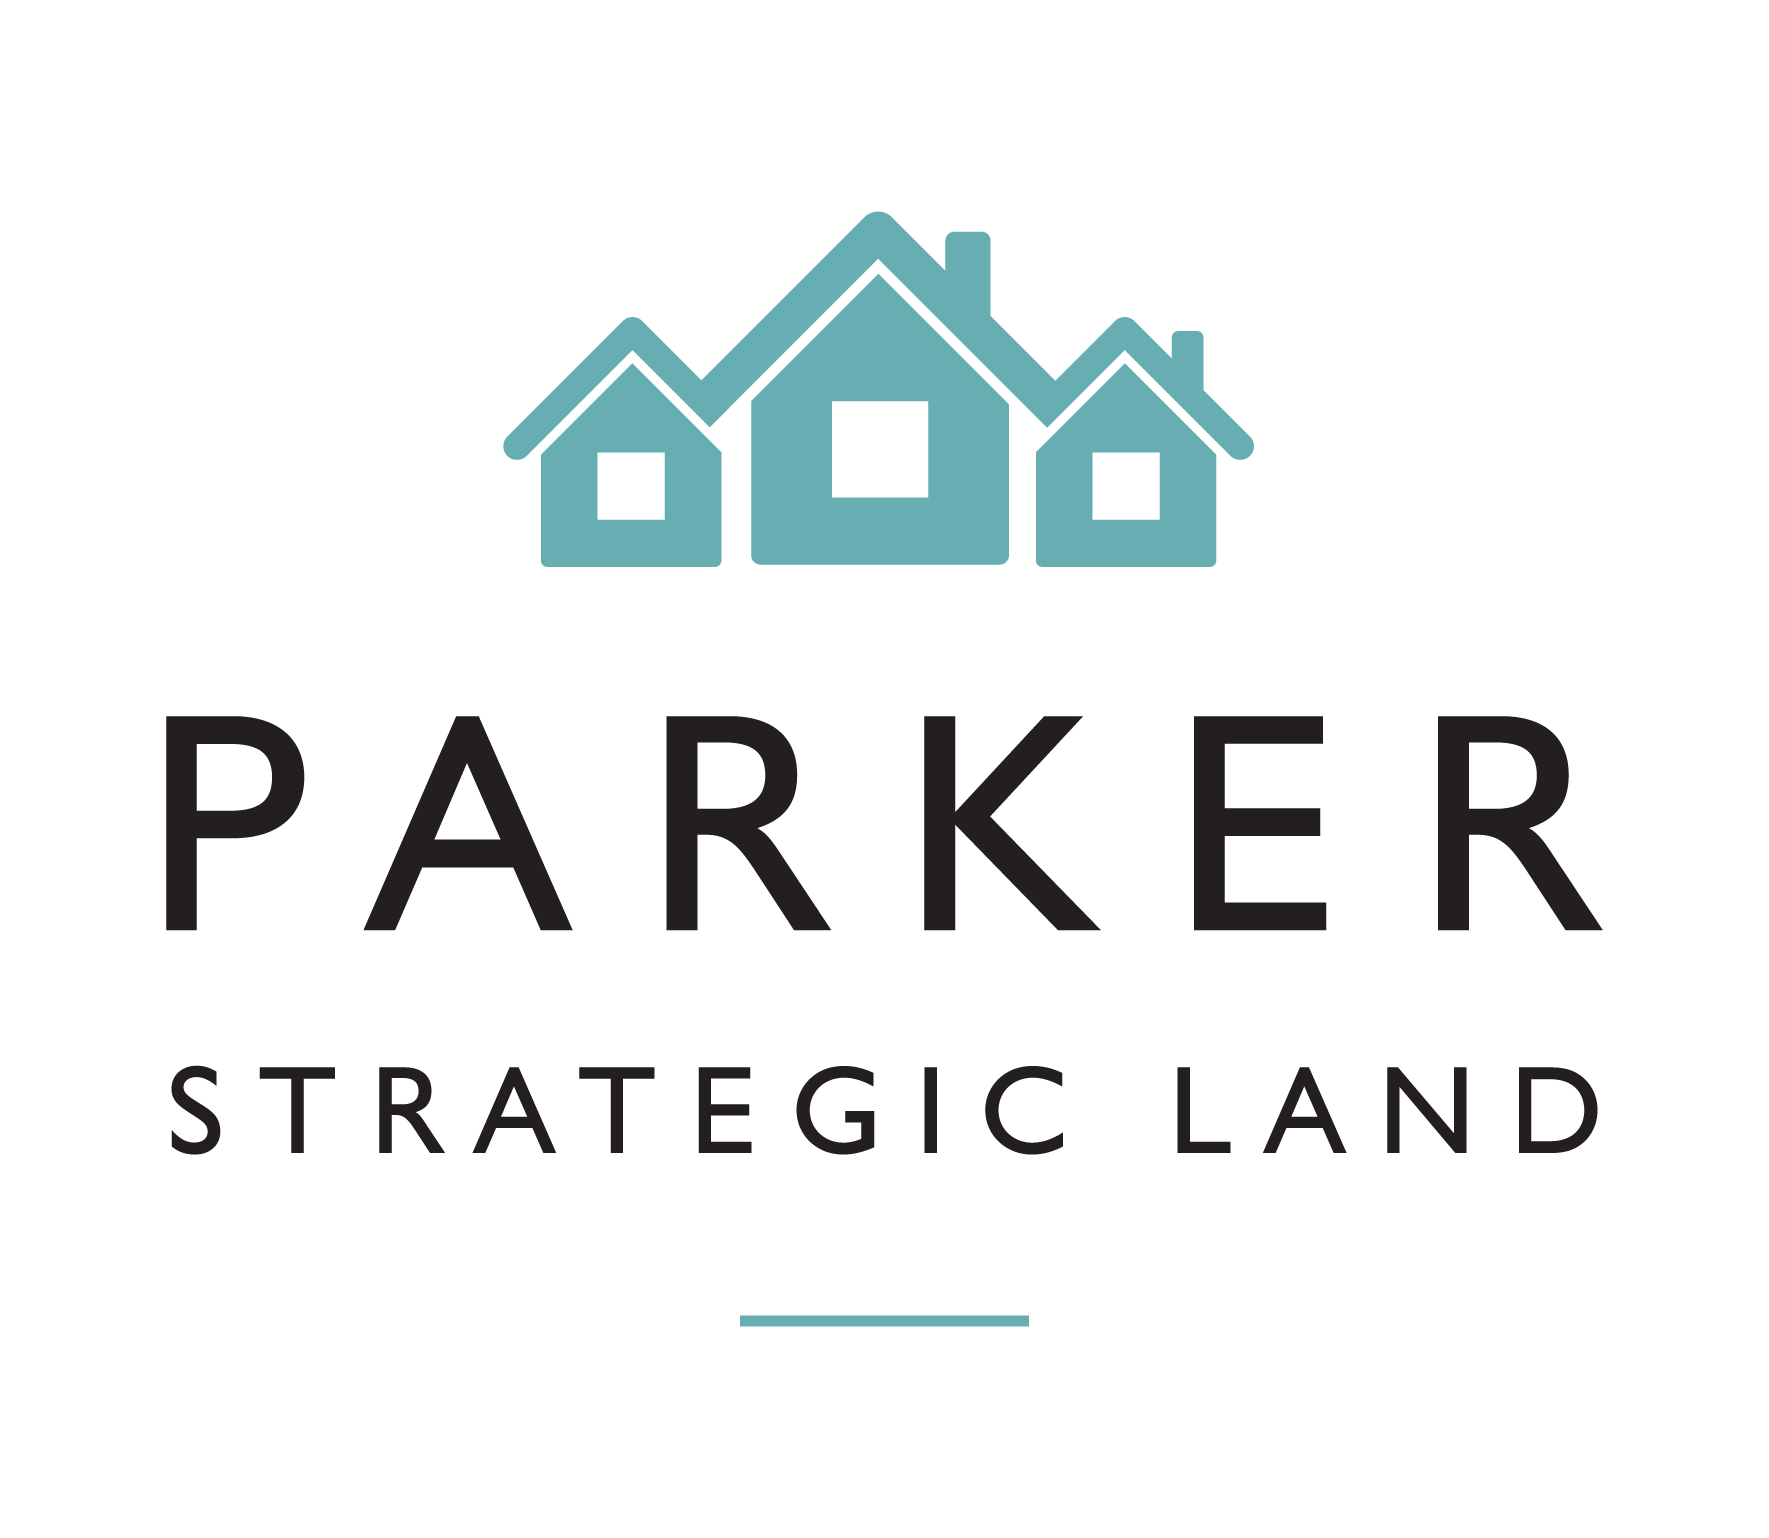 Parker Strategic Land